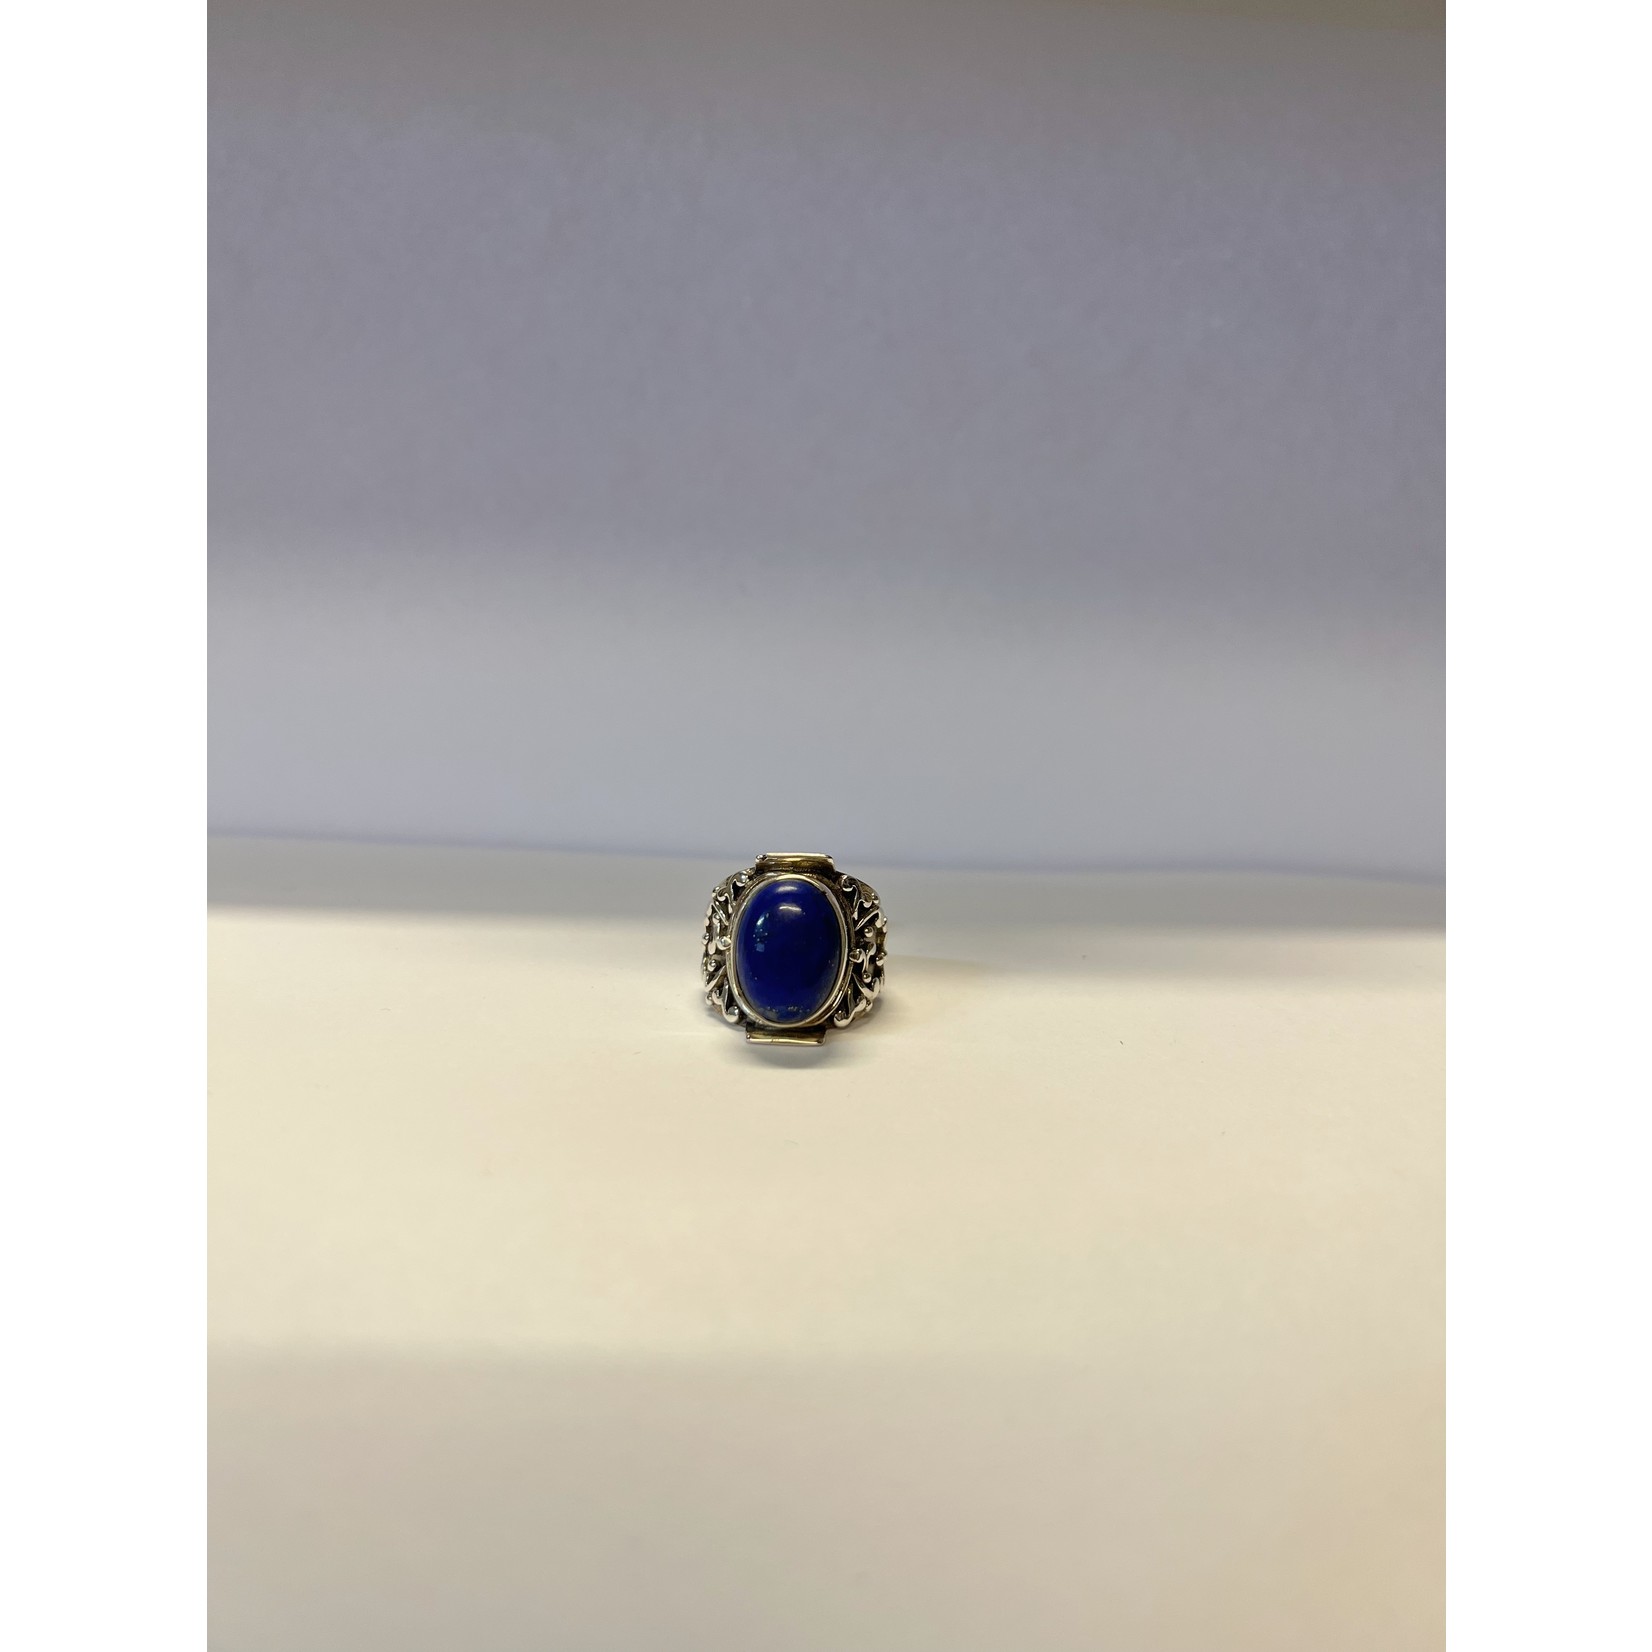 Large Lapis Lazuli ring style 1